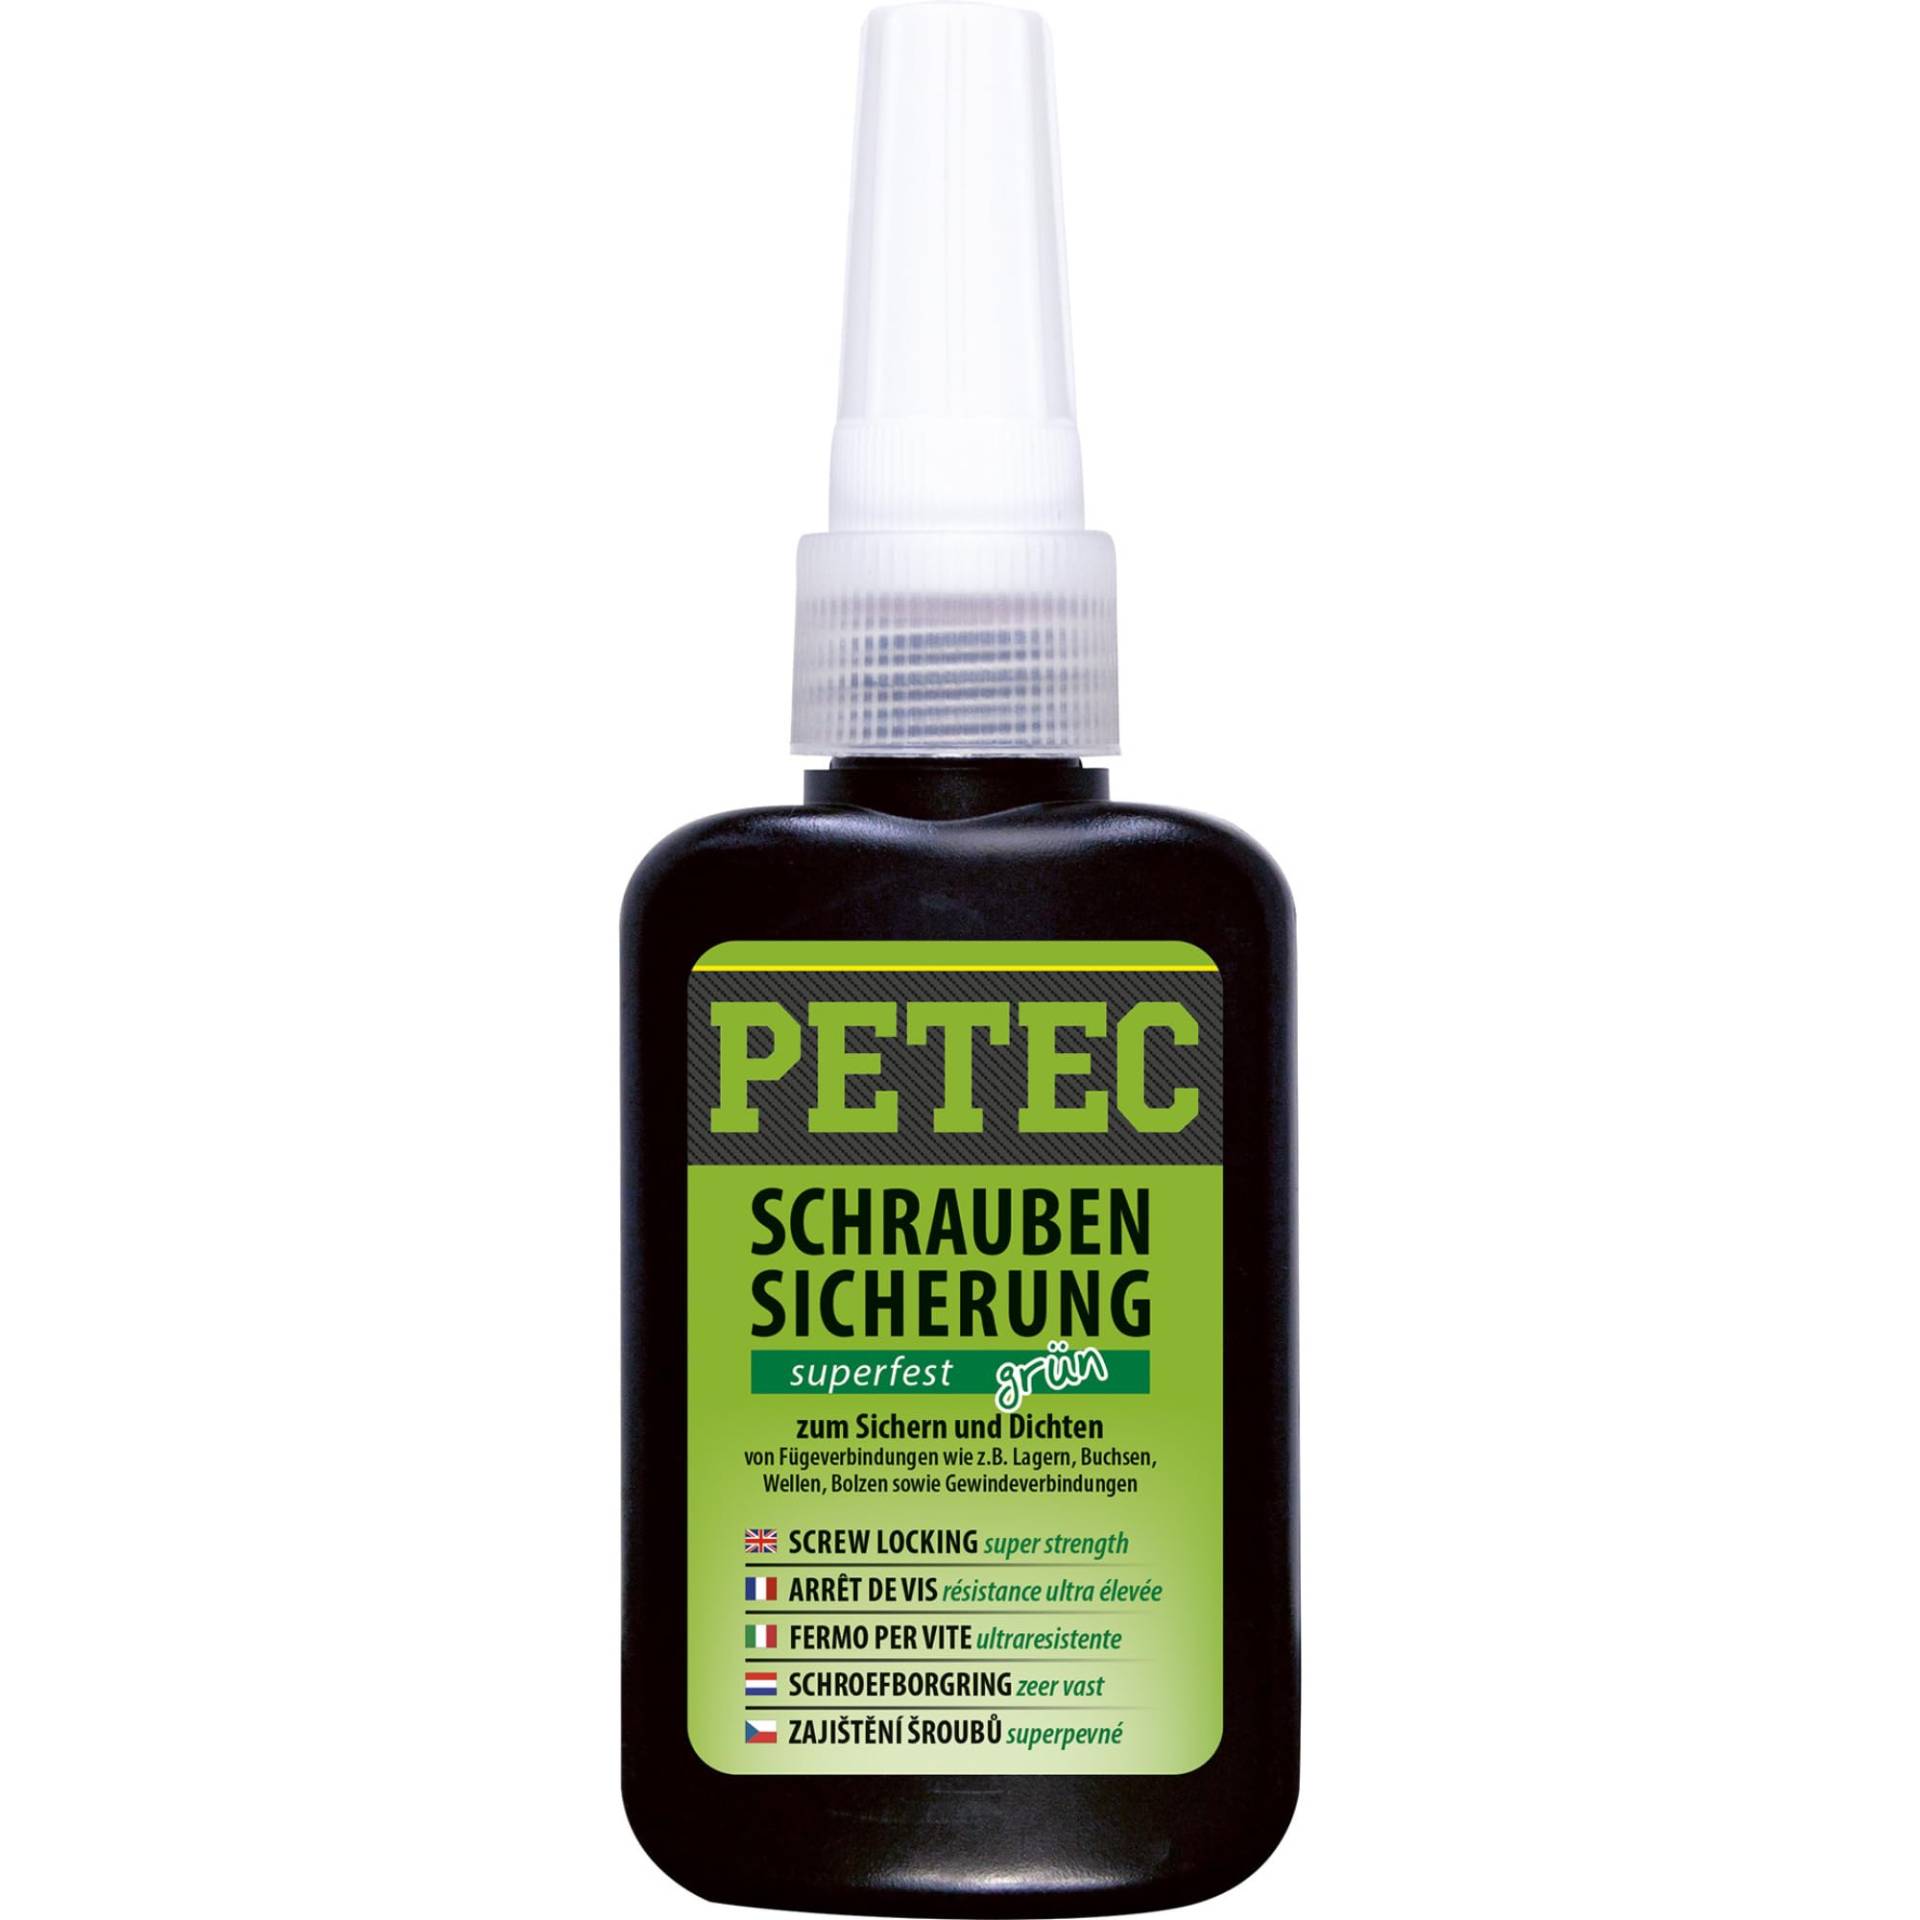 PETEC Schraubensicherung 50g. Schrauben Kleber zum Sichern und Dichten. Starker Klebstoff Schraubenkleber für Muttern, Bolzen und Gewindegrößen bis M36 (grün) von PETEC